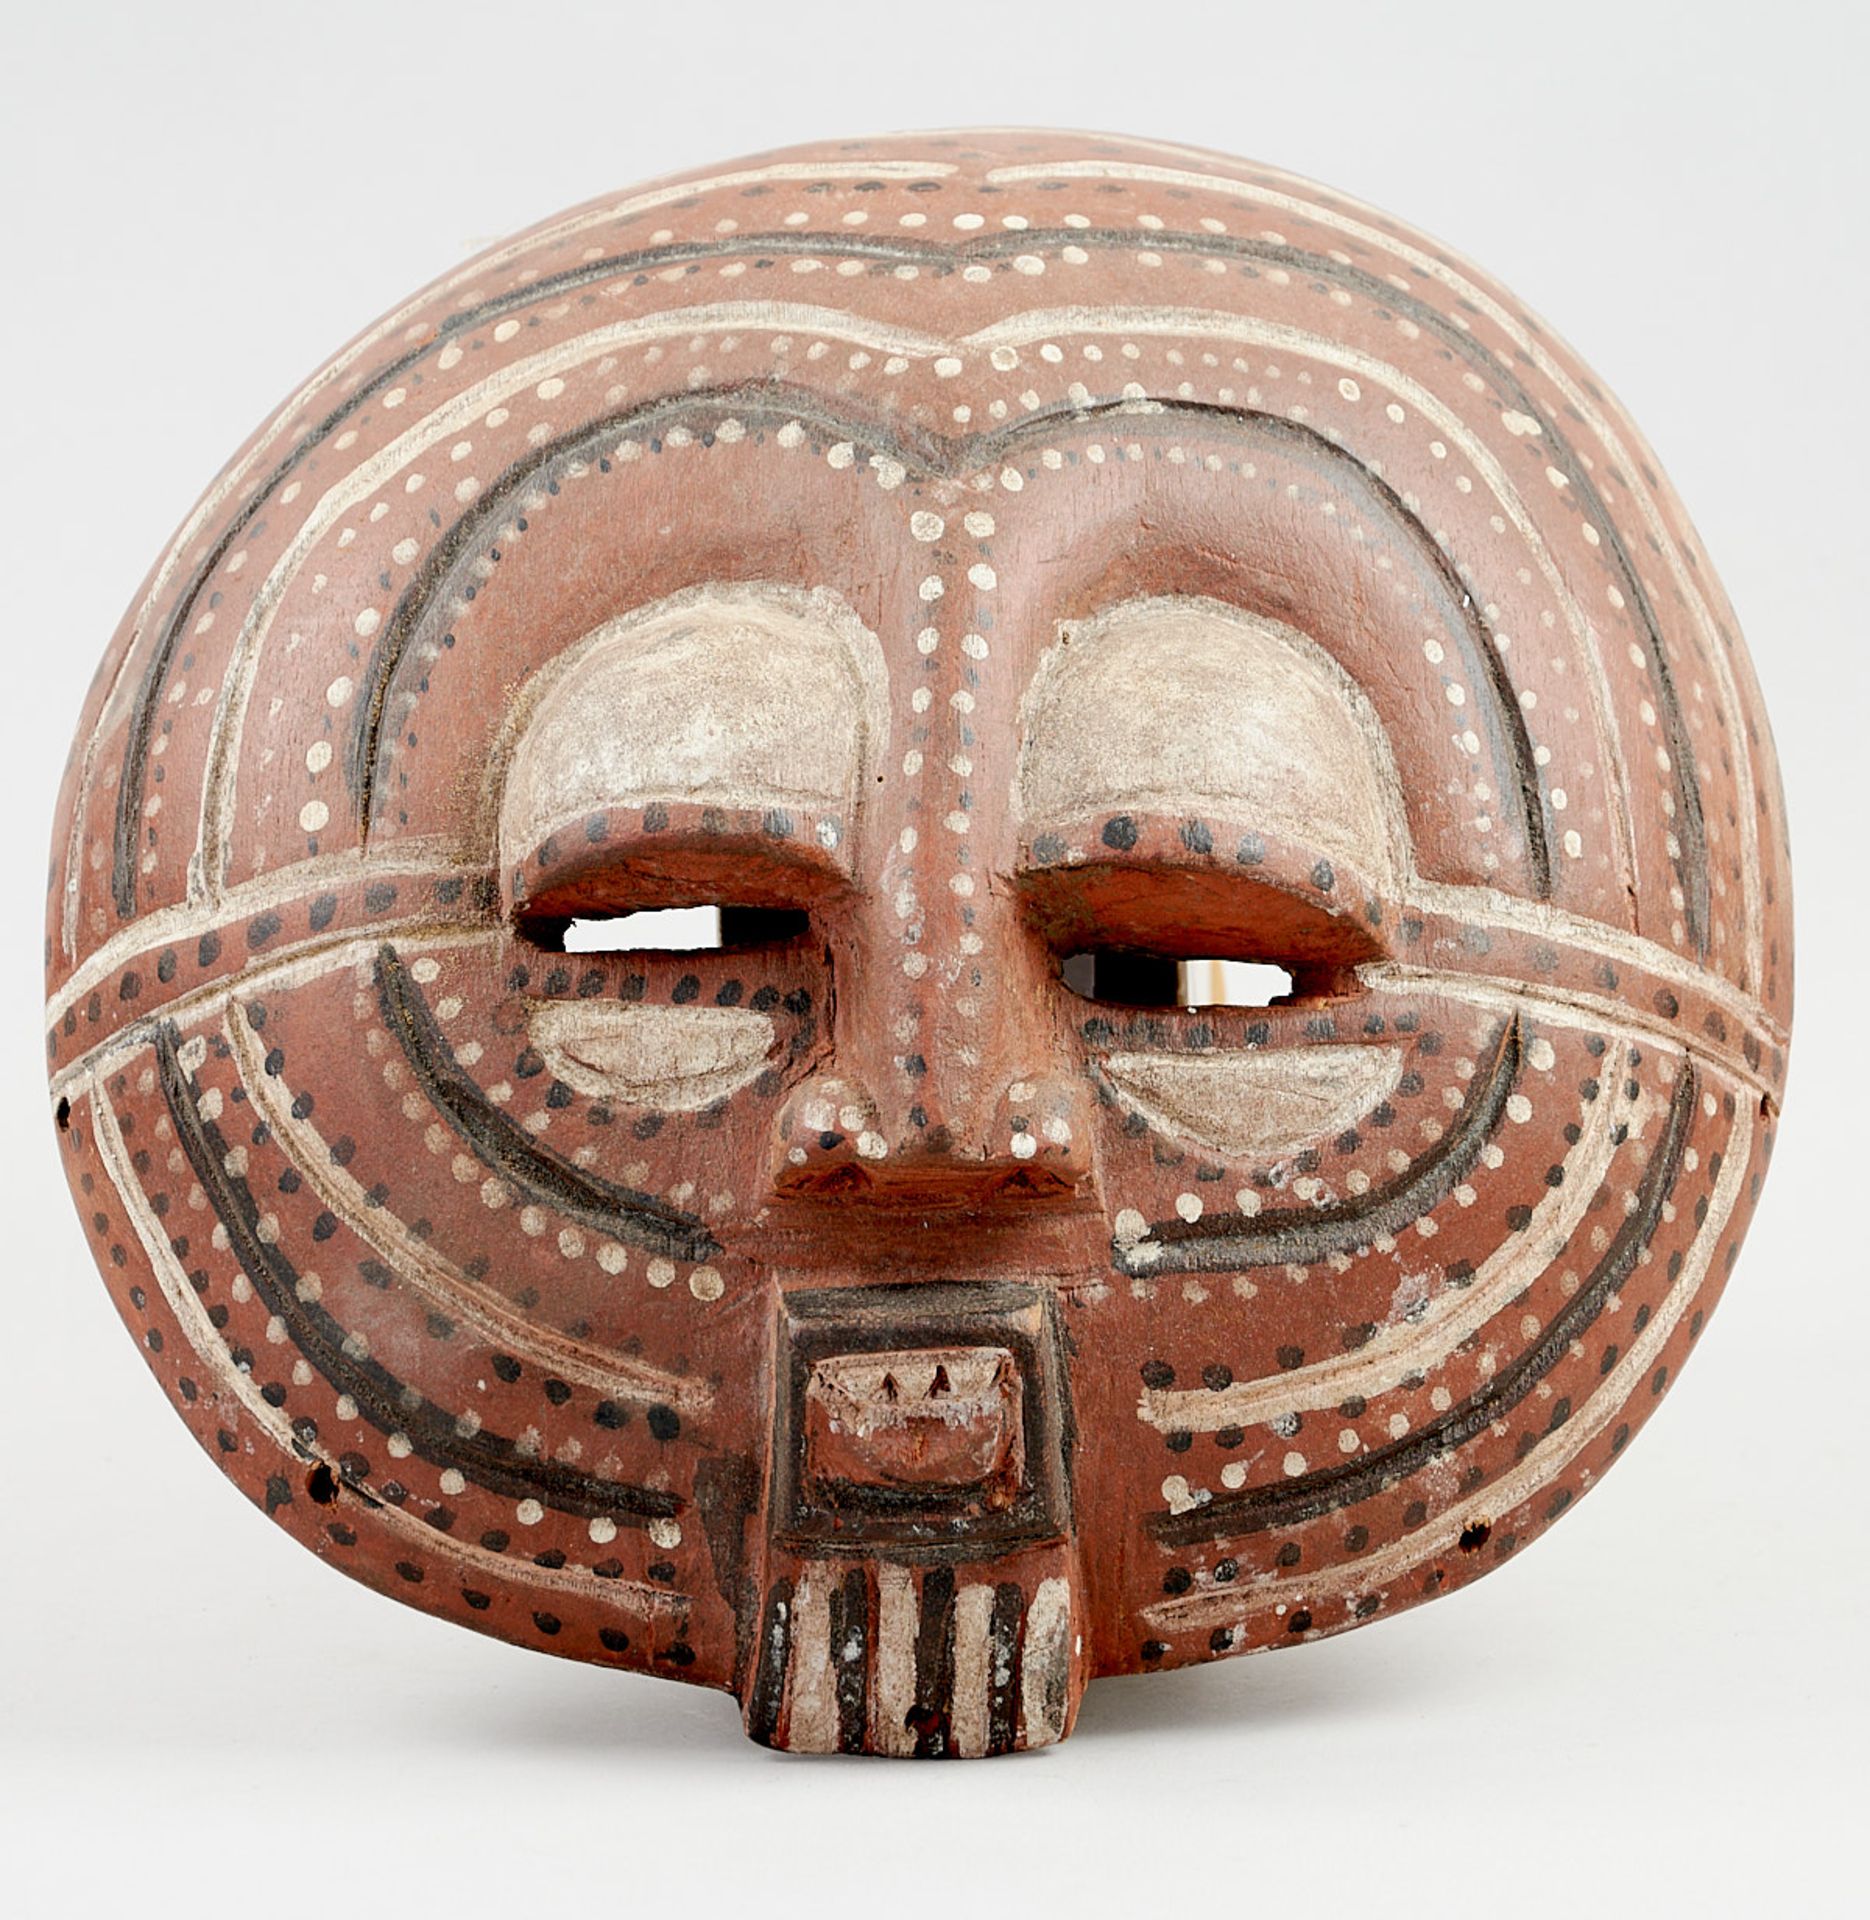 Kunsthandwerk - Afrika - Luba-Maske. - Holz, braun, schwarz und weiß bemalt. - Image 3 of 4